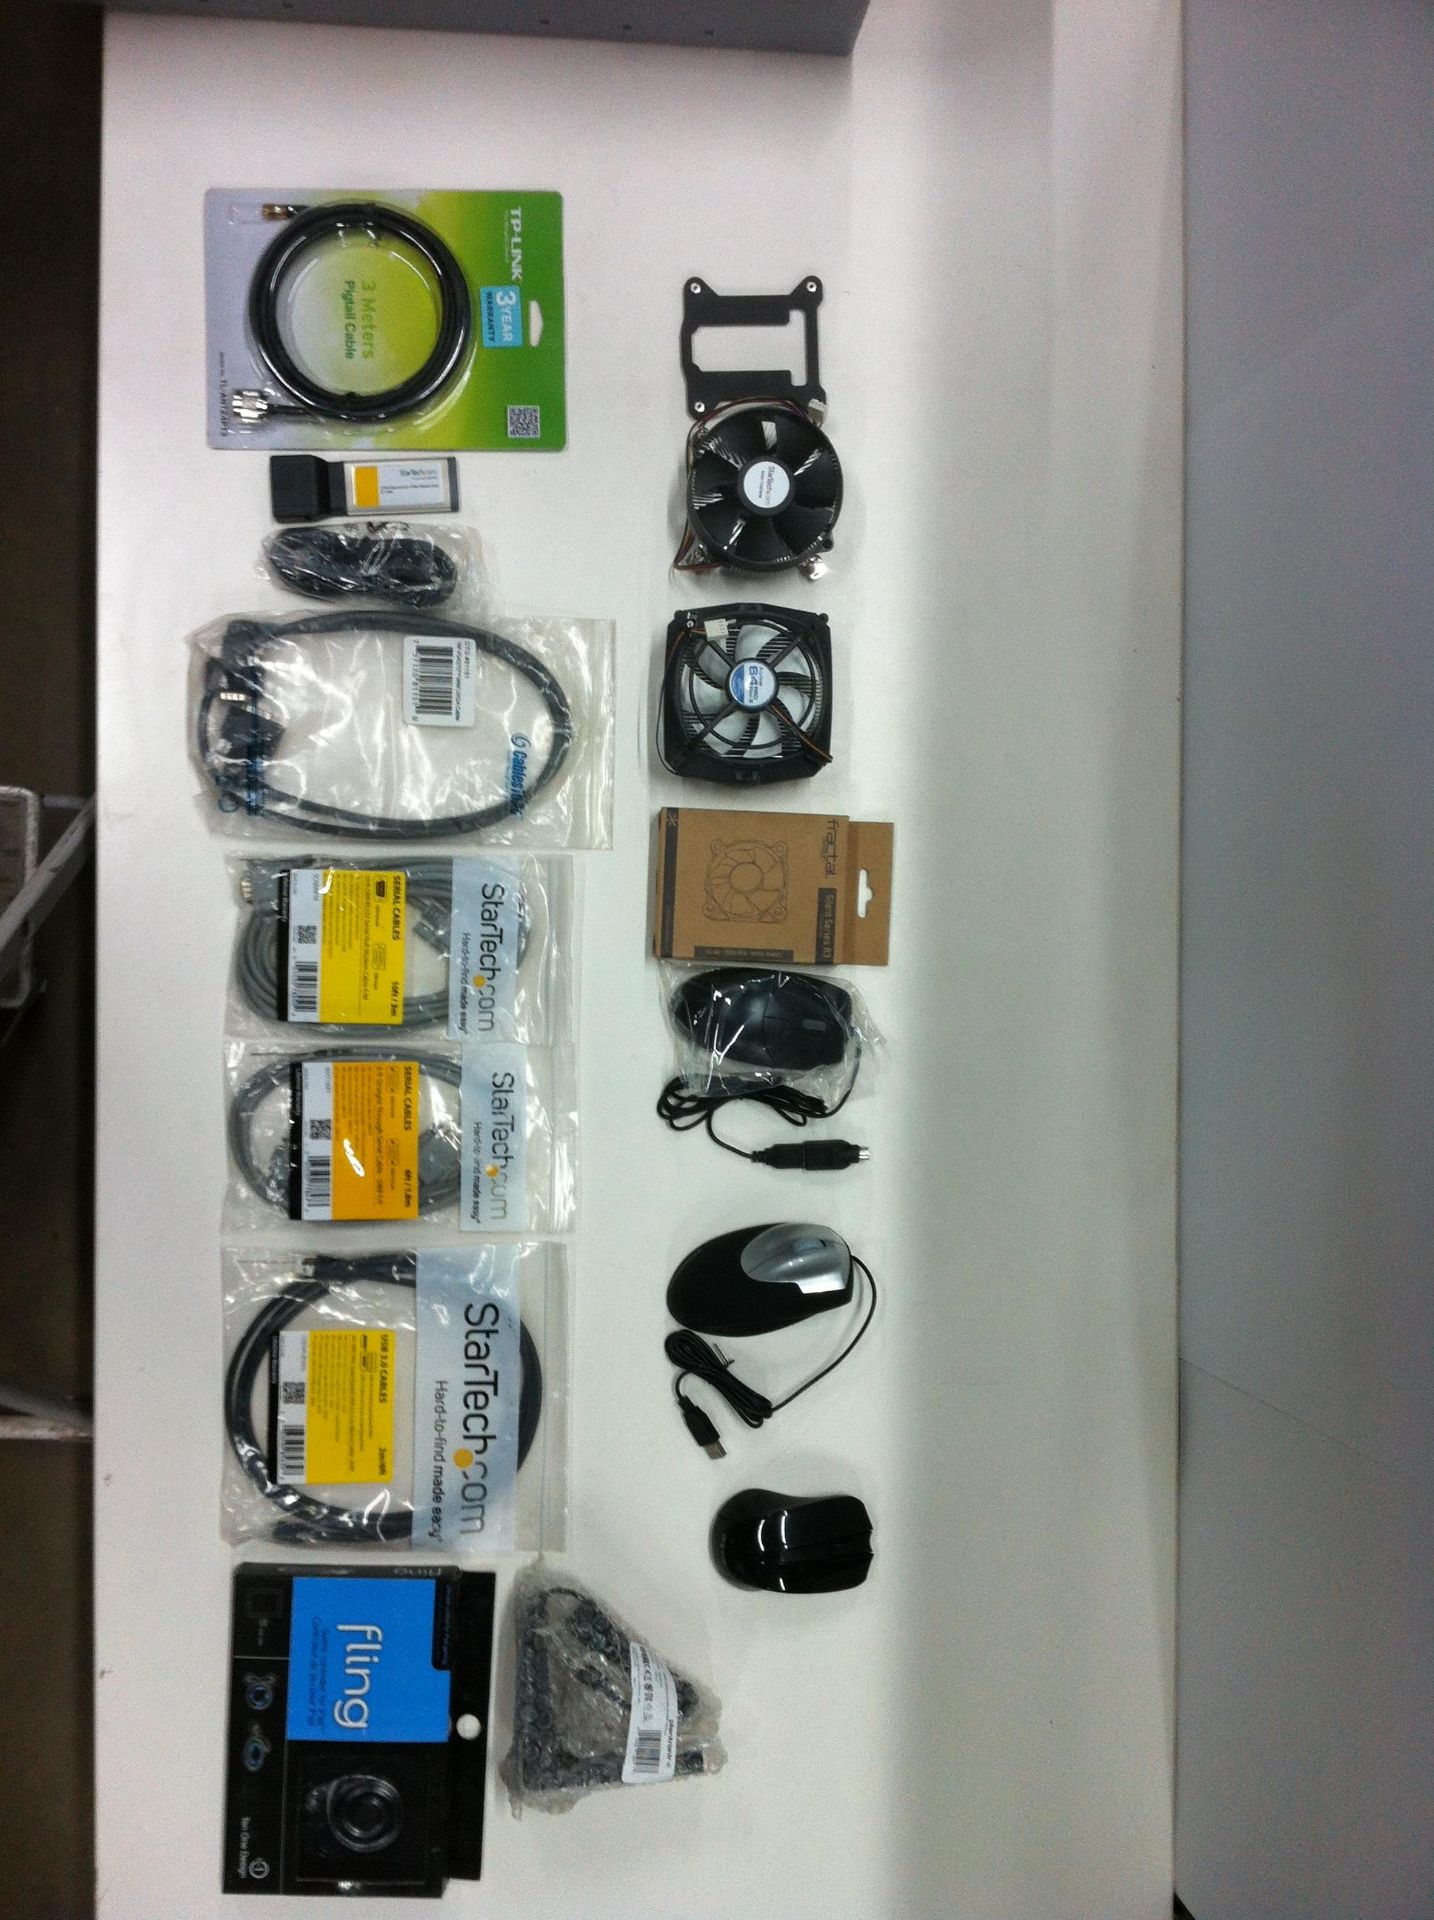 70 x Various IT Accessories as Per Description - Inc: USB Cables, Cooler Fans, Mouses & Adapters - R